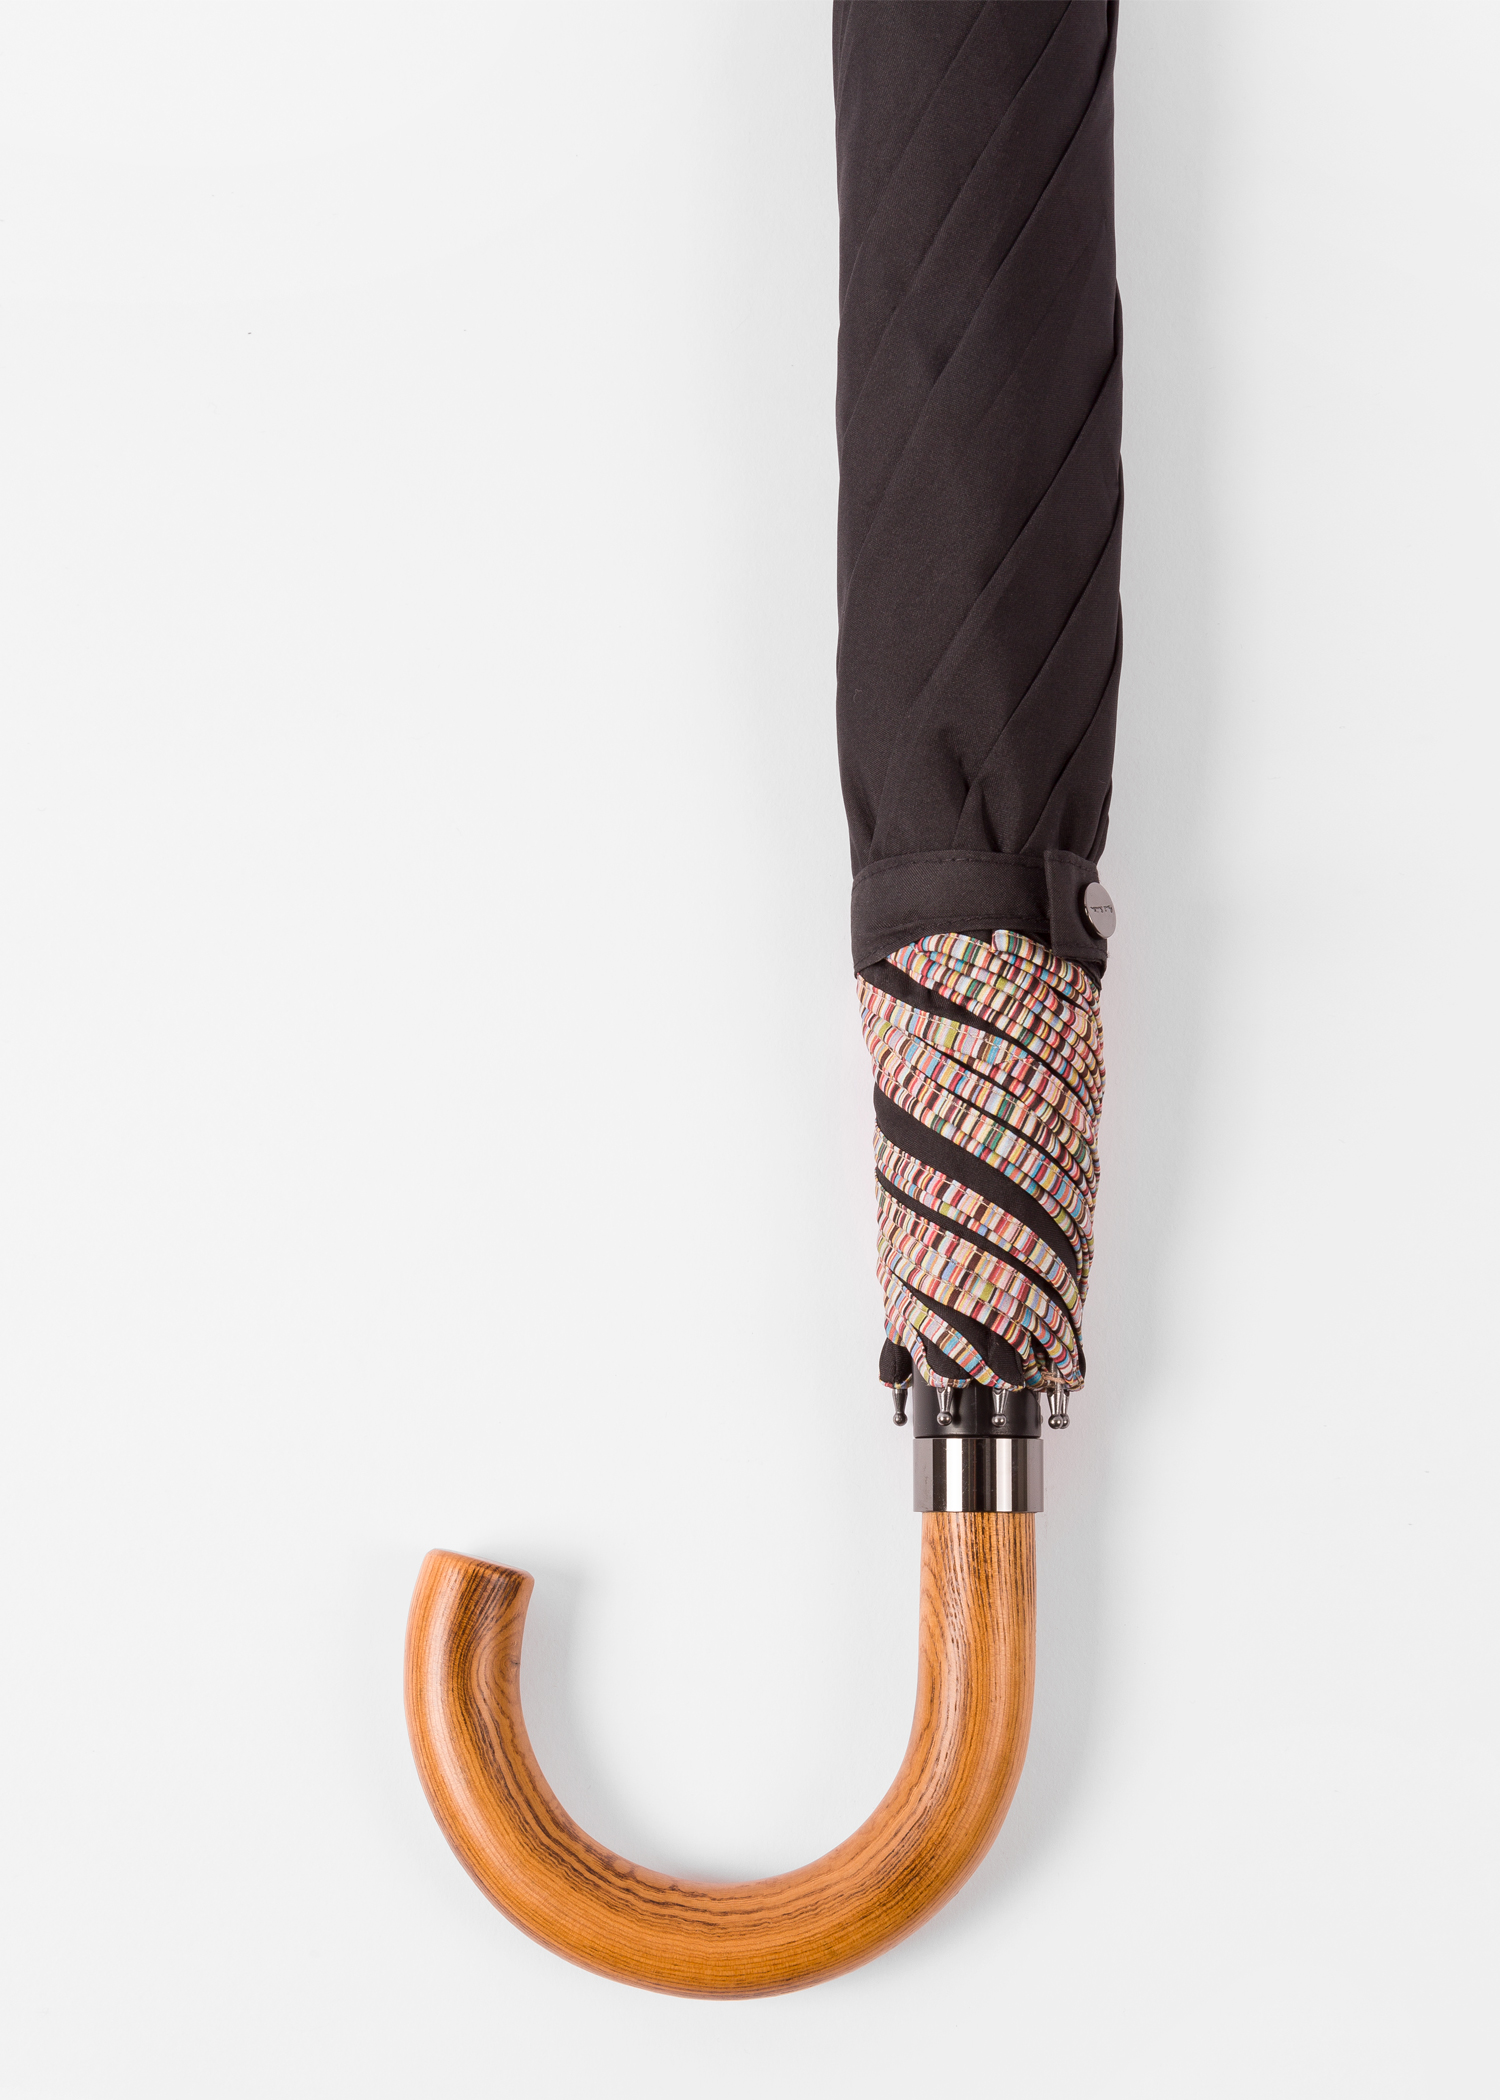 Parapluie Paul Smith Pliant Noir Avec Bordure 'Signature Stripe' Et Pommeau En Bois Paul Smith